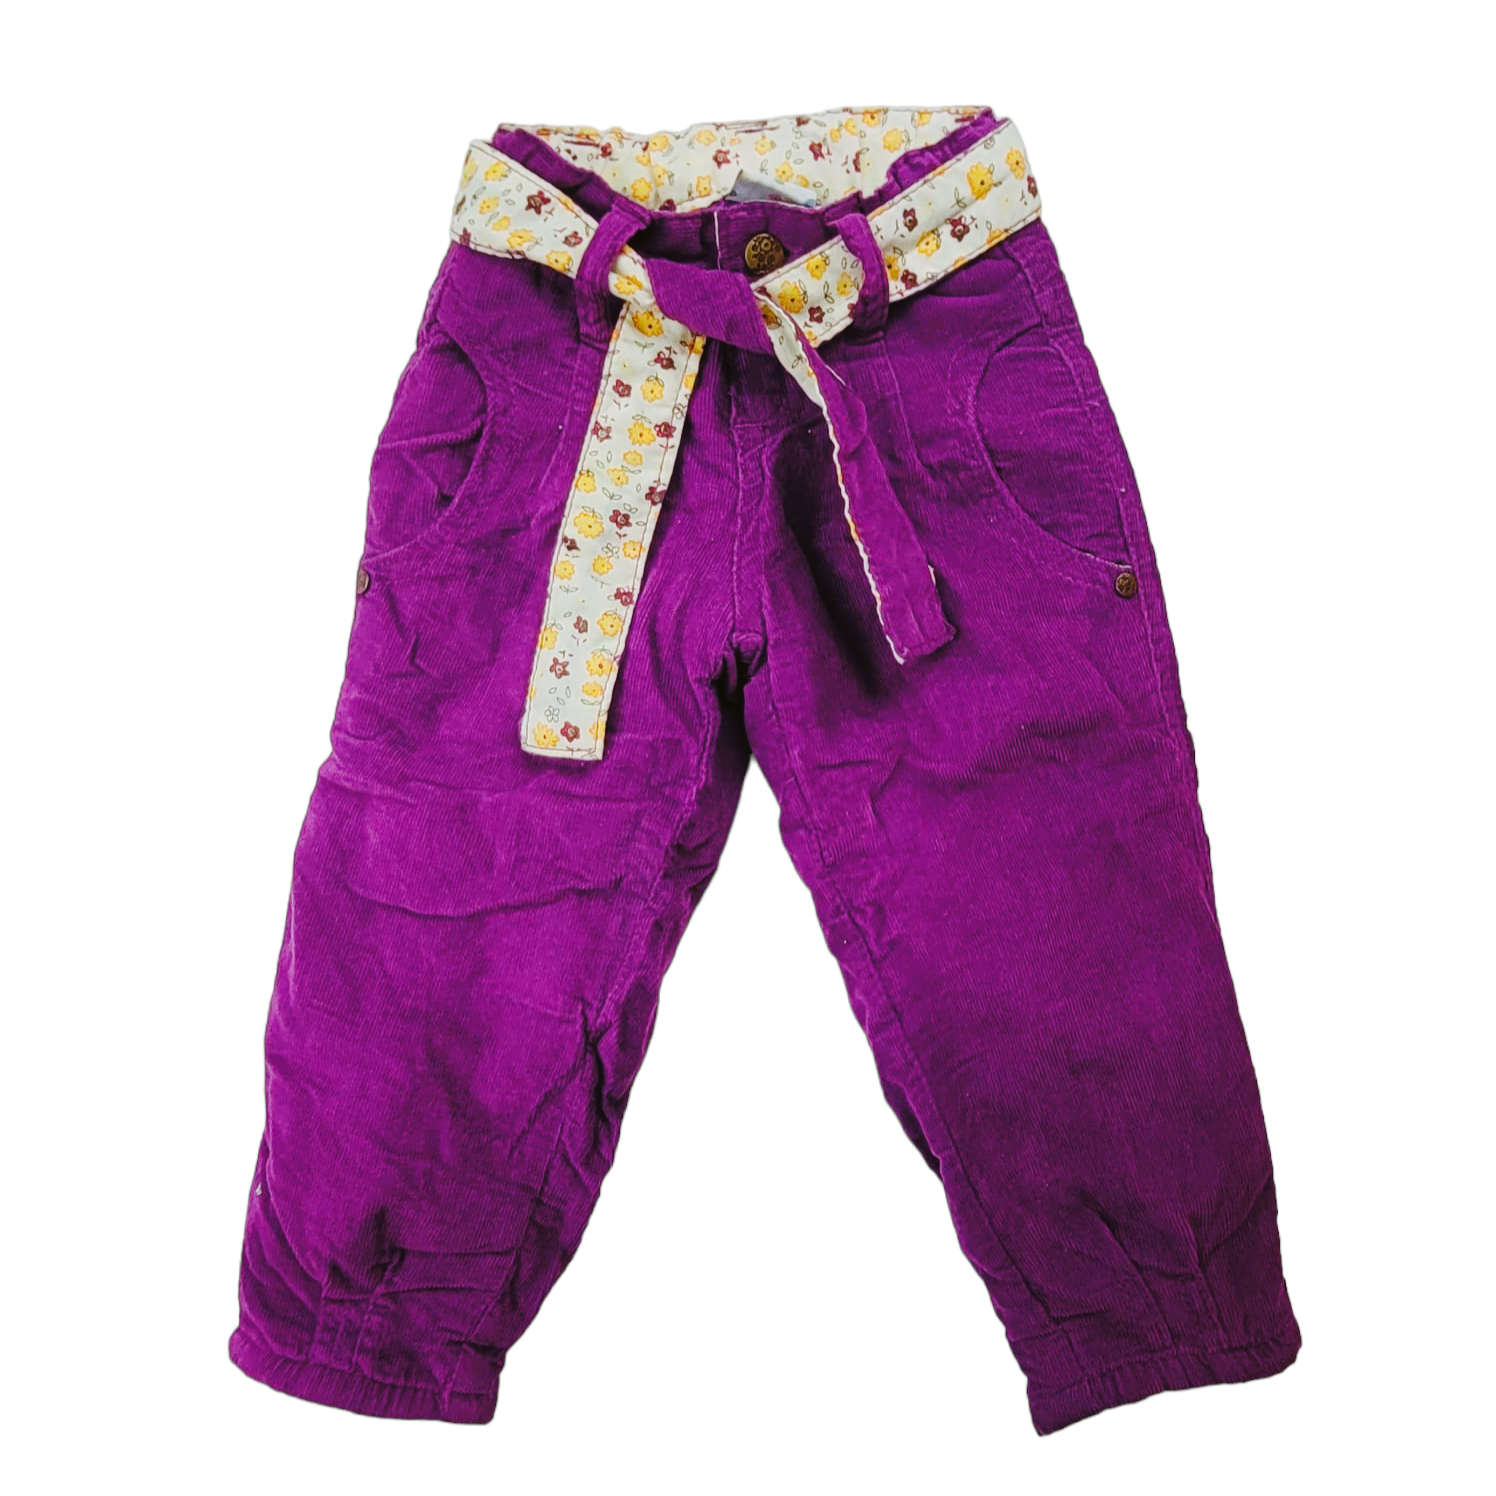 Pantalon de cotele lila forrado con interior de polar